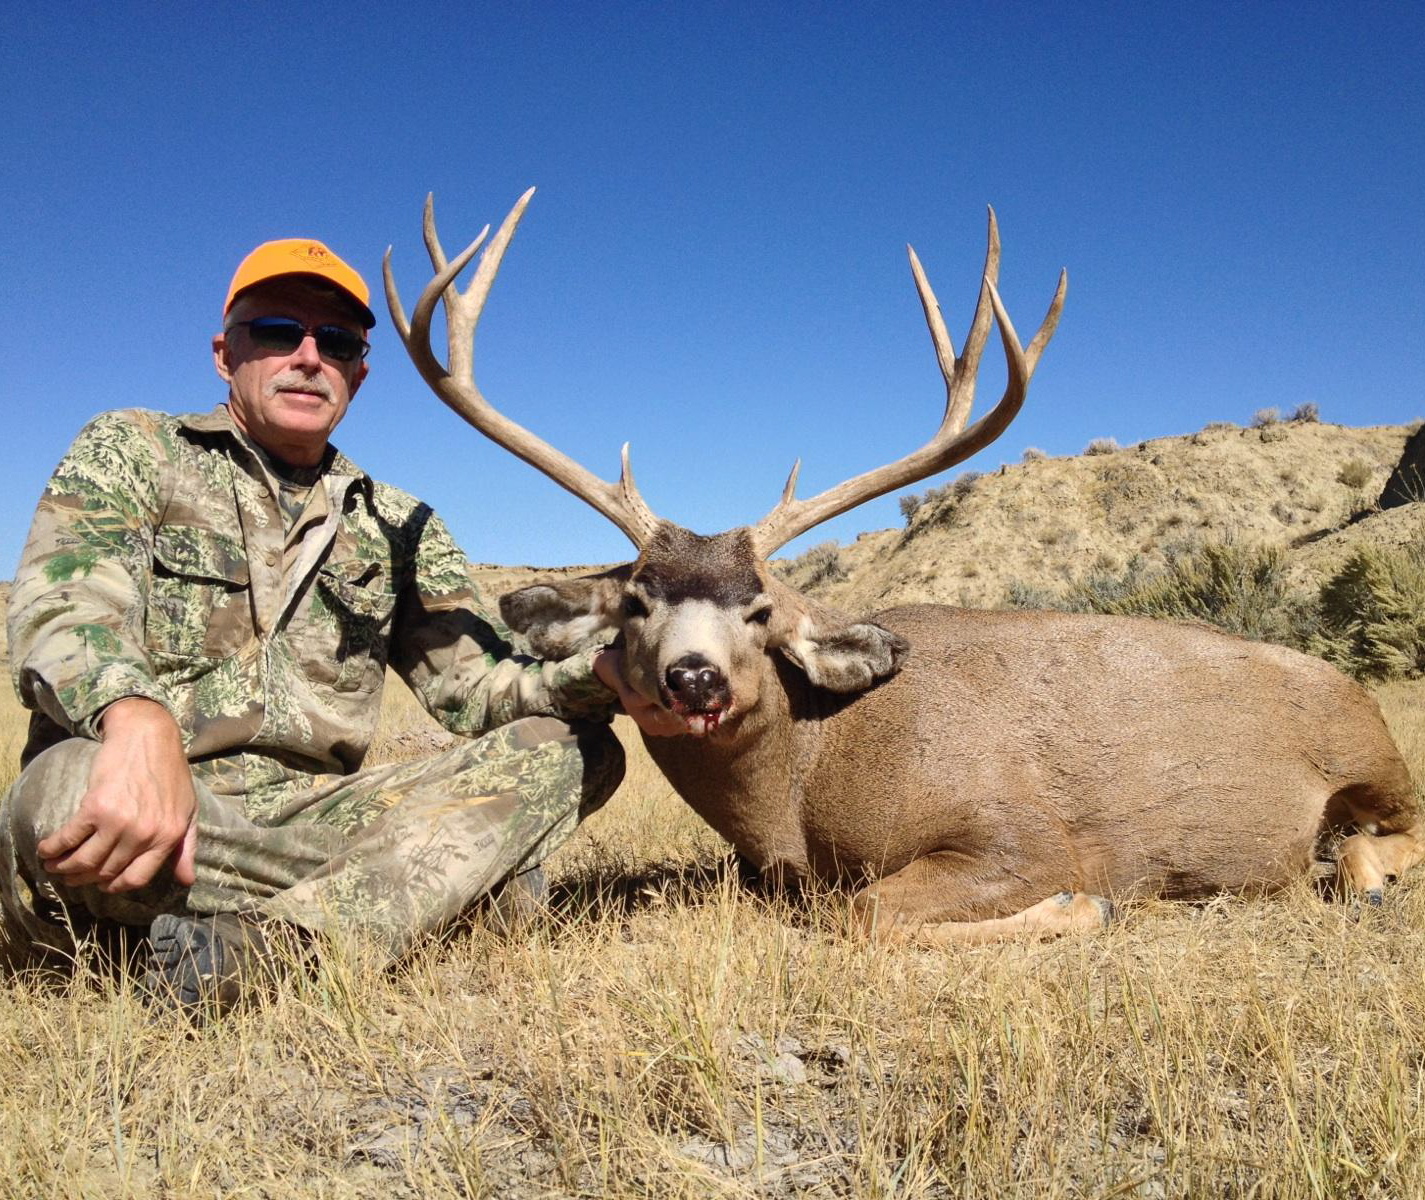 Wyoming Hunting Season Photo Roundup | Wyoming Hunting News